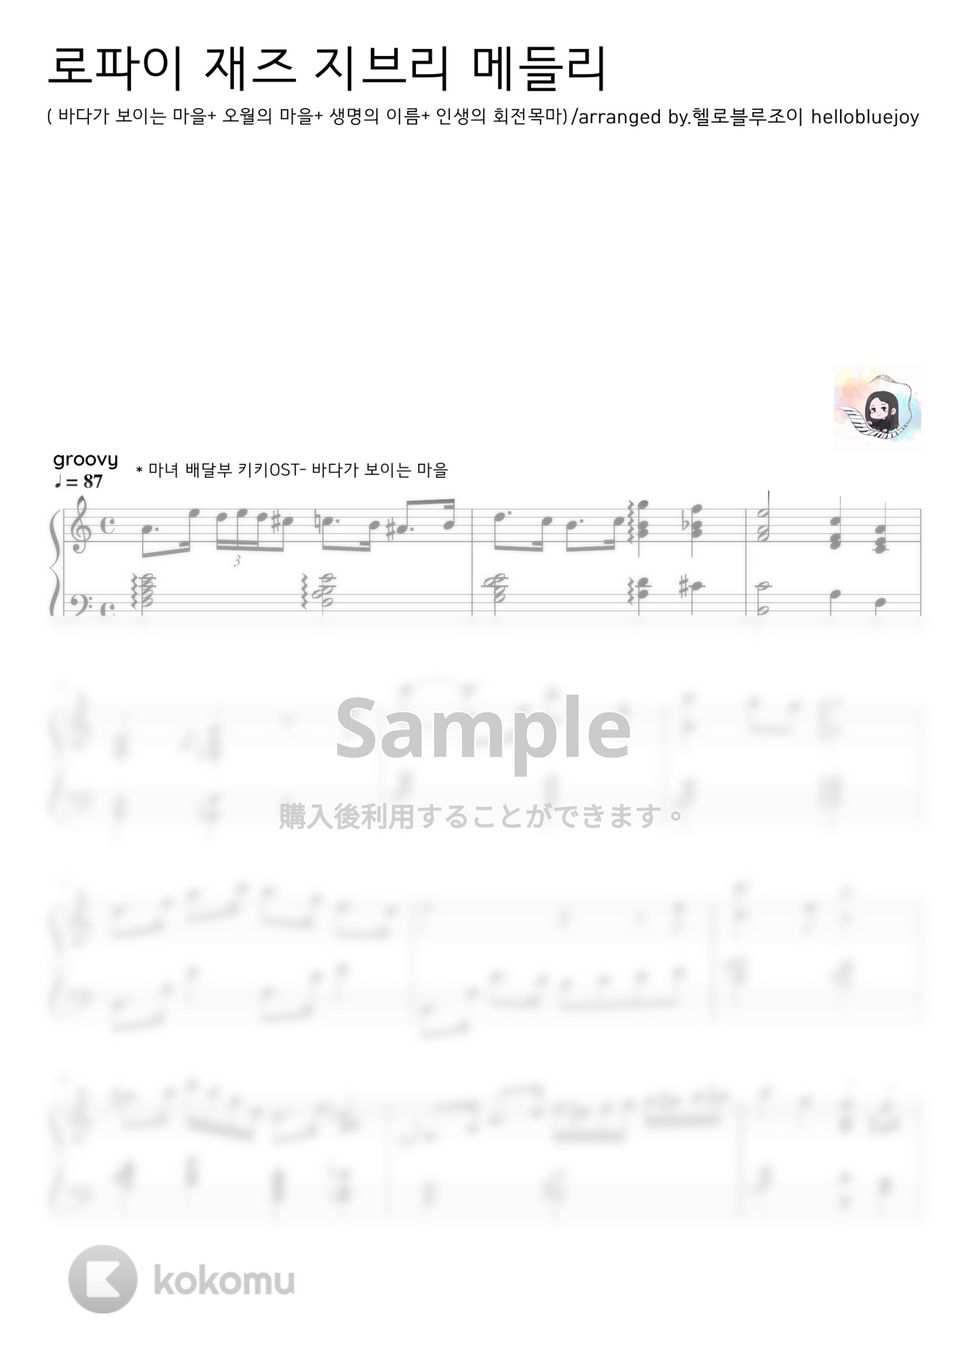 Ghibli Studio - Lo-fi jazz Ghibli Medley (jazz medley) by hellobluejoy